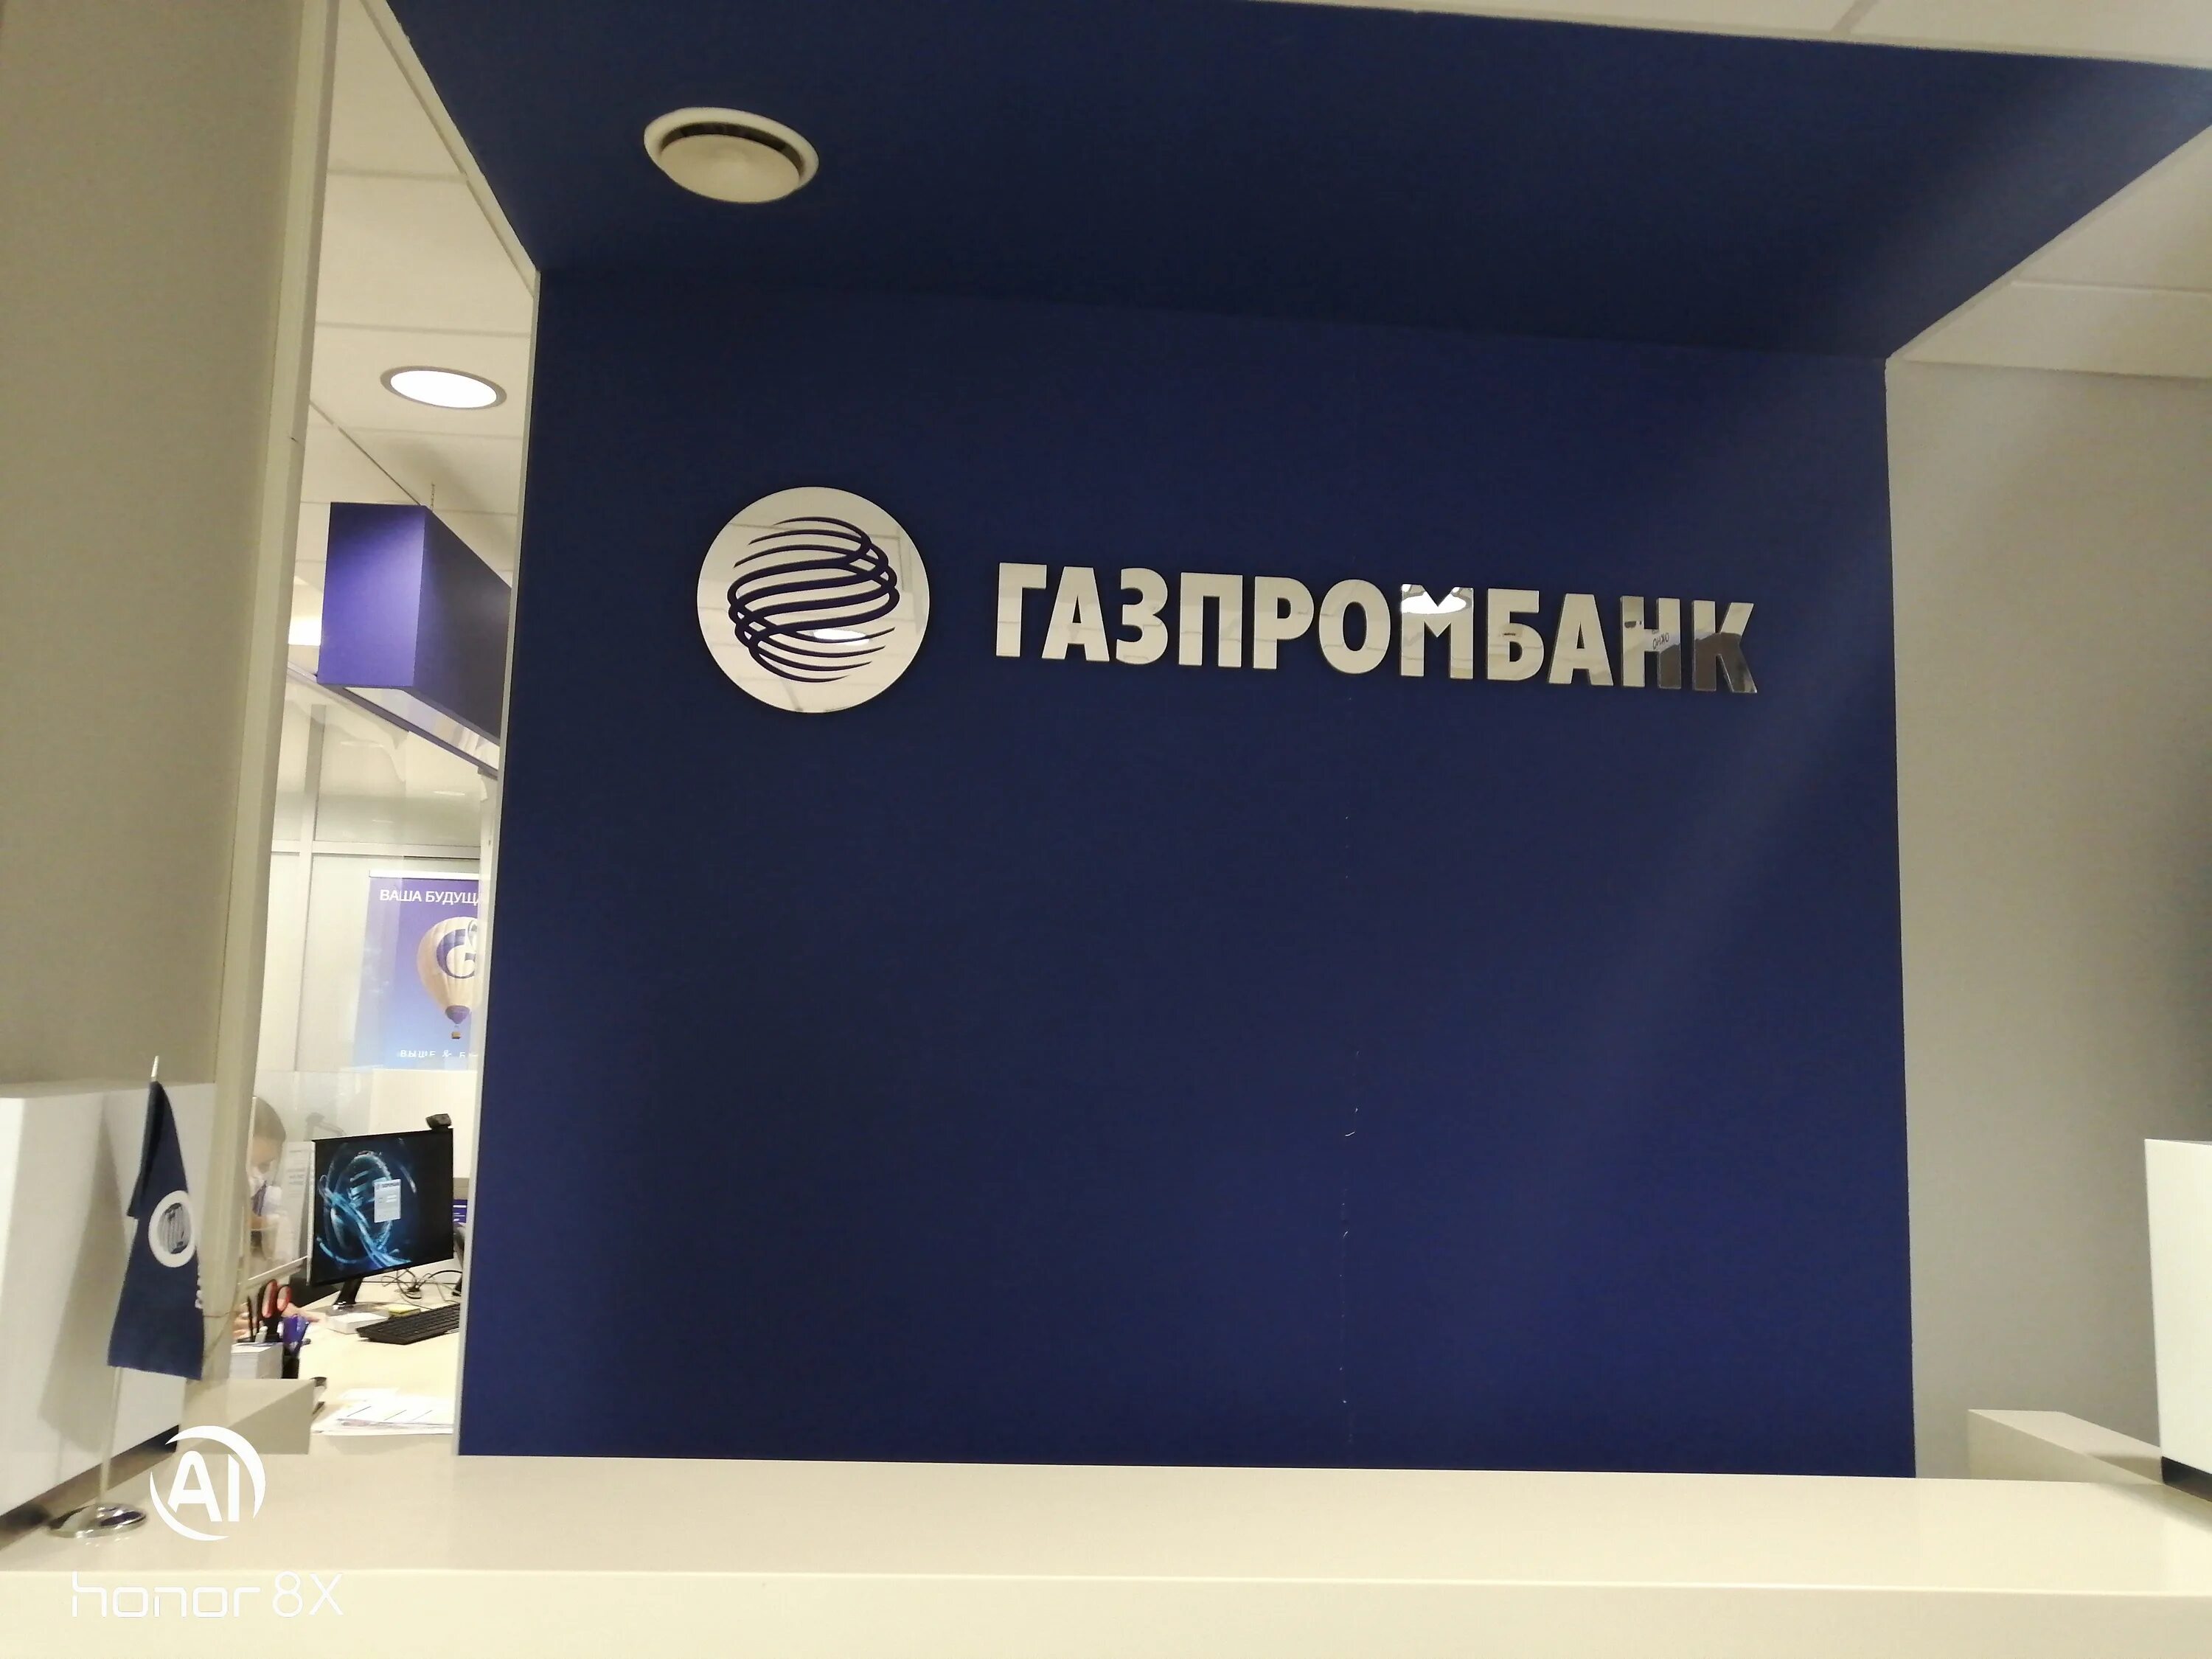 Газпромбанк позвонить. Банк Газпромбанк. Газпромбанк новый логотип. Офис банка Газпромбанк. Газпромбанк Самара.